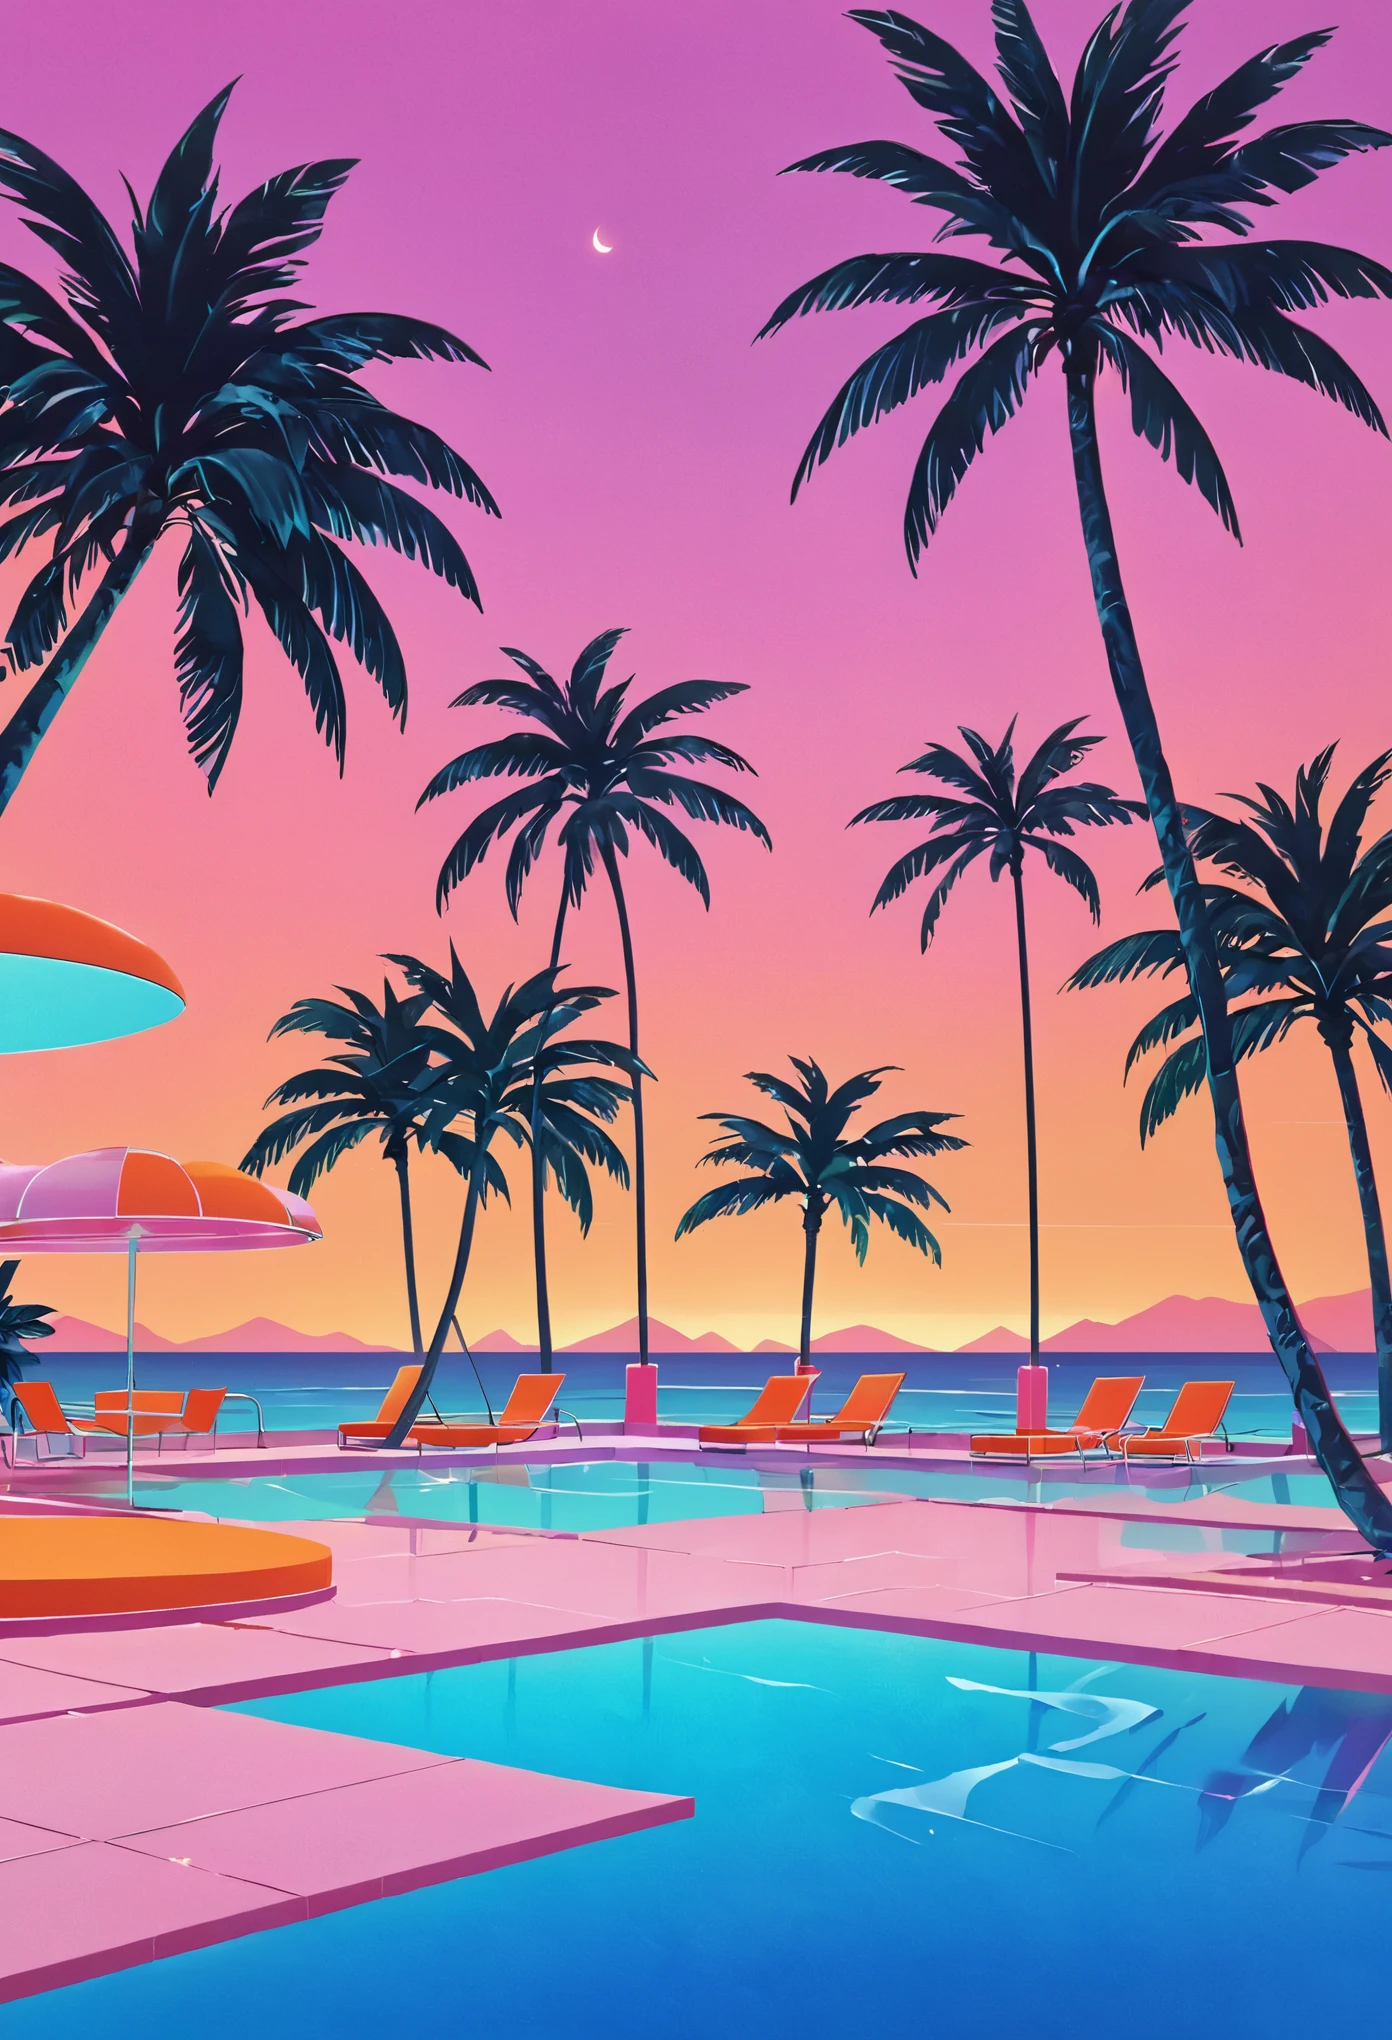 Stellen Sie sich ein Kunstwerk vor, das tief in der Vaporwave-Ästhetik der 80er Jahre versunken ist, inspiriert vom dynamischen Stil von Yoko Honda. Stellen Sie sich eine retro-futuristische Pool- und Strandszene bei Sonnenuntergang vor, wo der Himmel in den warmen Farben eines Sommersonnenuntergangs der 80er Jahre leuchtet – intensive Orangetöne, Rosa, und Rottöne, die sich im ruhigen Meer und Poolwasser spiegeln. Rund um den Pool, Neonbeleuchtete Palmen und Kokospalmen wiegen sich sanft, Verstärkung der tropischen und surrealen Atmosphäre. Neonlichter in geometrischen Mustern erhellen die Szene, wirft einen traumhaften Glanz auf alles. Im Hintergrund ist eine schicke Strandbar zu sehen, deren Inneneinrichtung durch große Glasfenster sichtbar ist., präsentiert einen Raum mit pastellfarbenen Wänden und Böden, die mit luxuriösen Terrazzo- und Marmorstrukturen bedeckt sind. Das Gesamtambiente verbindet nostalgischen Luxus mit lebendiger, warme Farbpaletten, Schaffung einer Szene, die sowohl zeitlos ist als auch deutlich an die 80er Jahre erinnert.